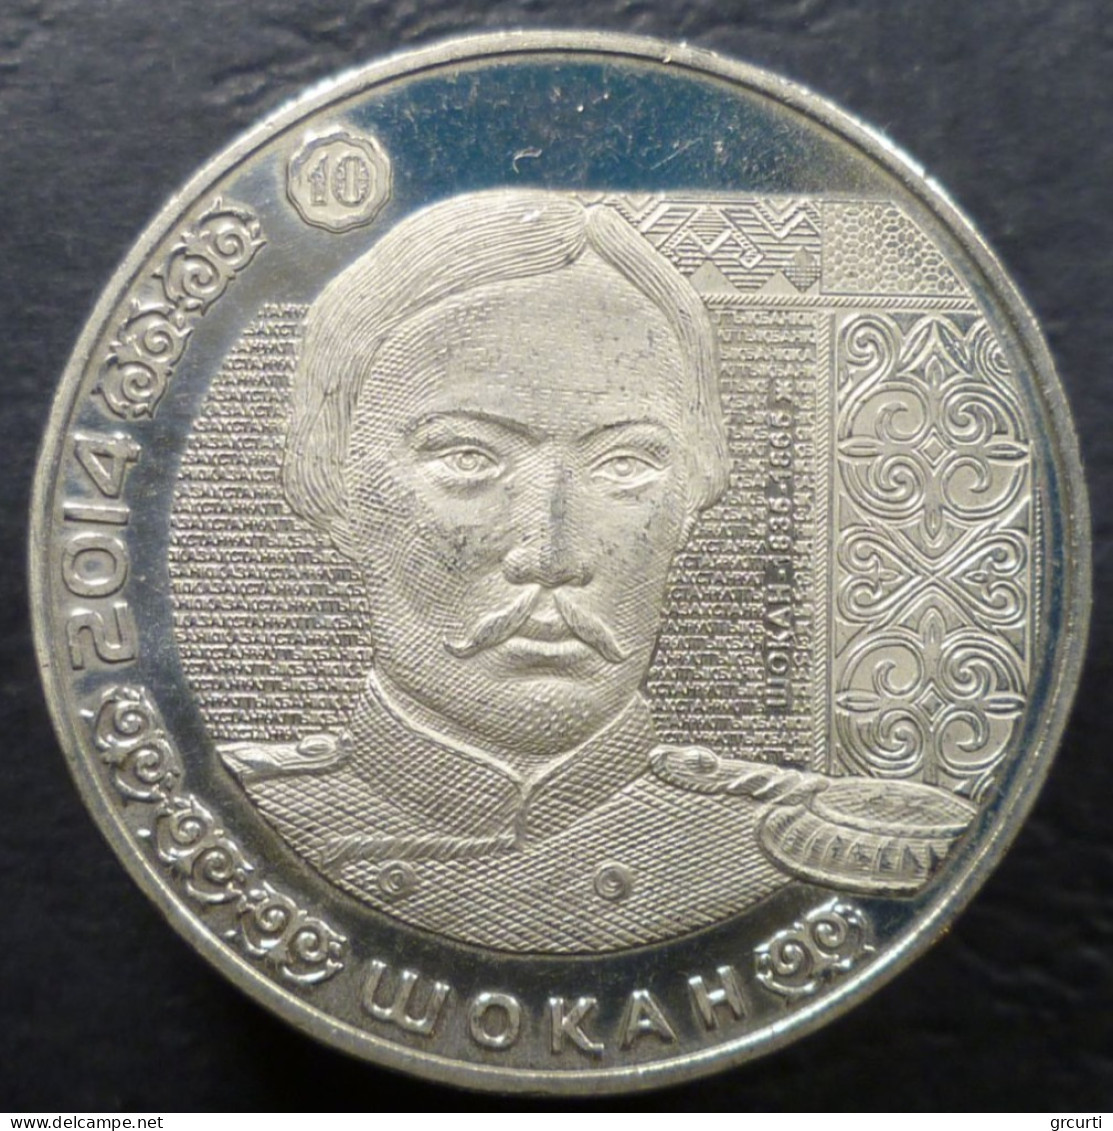 Kazakistan - 50 Tenge 2014 - Ritratti Sulle Banconote - Shoqan Walikhanov (Шоқан) - UC# 295 - Kazakhstan